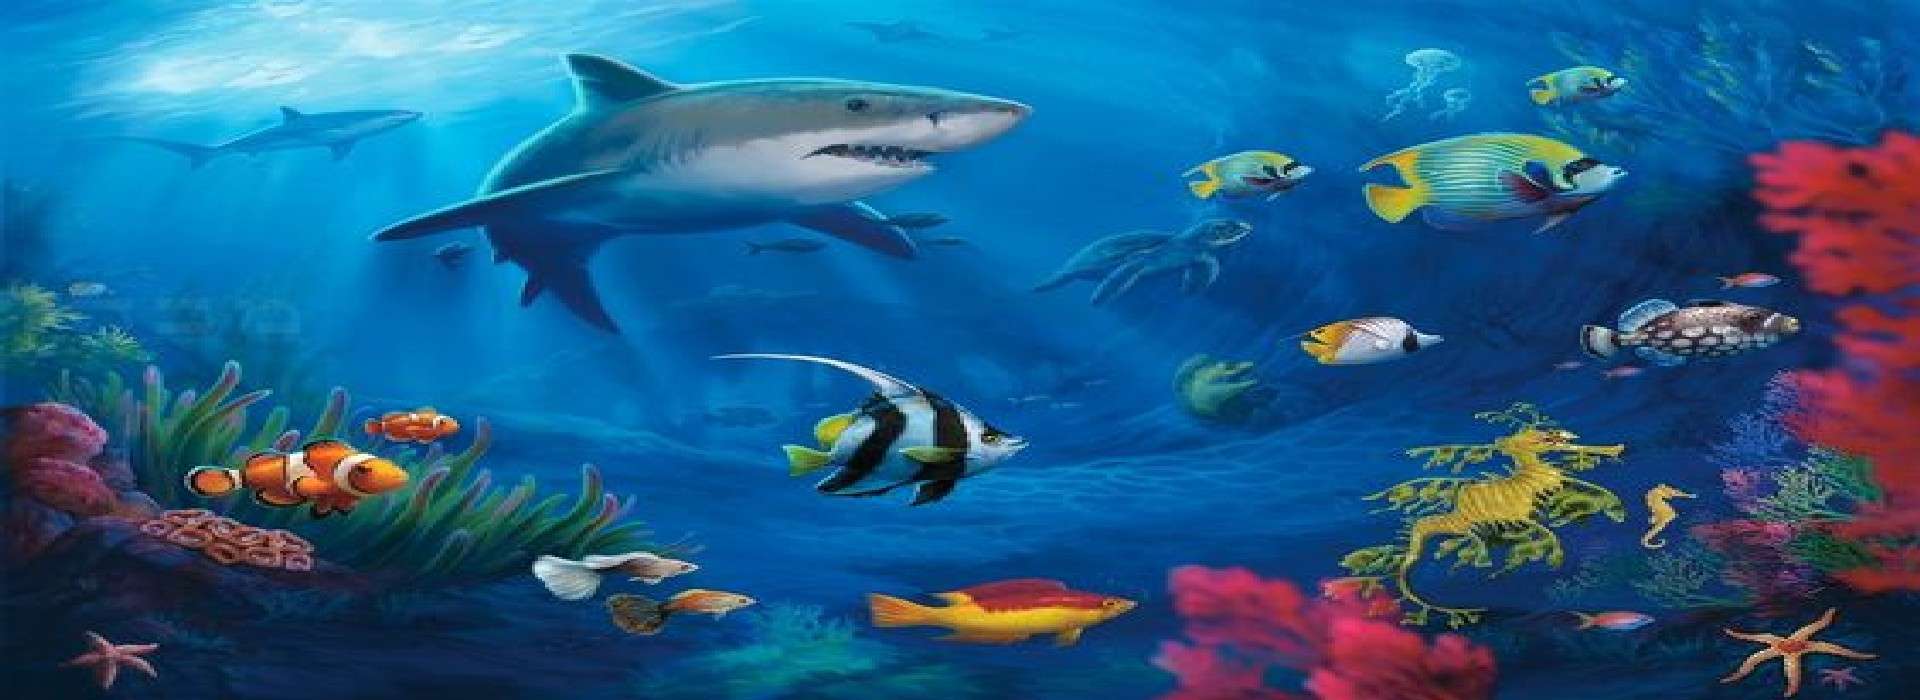 Slider d'images de l'animation Visio animation  3/8 ans  1 heure "sous l 'océan"